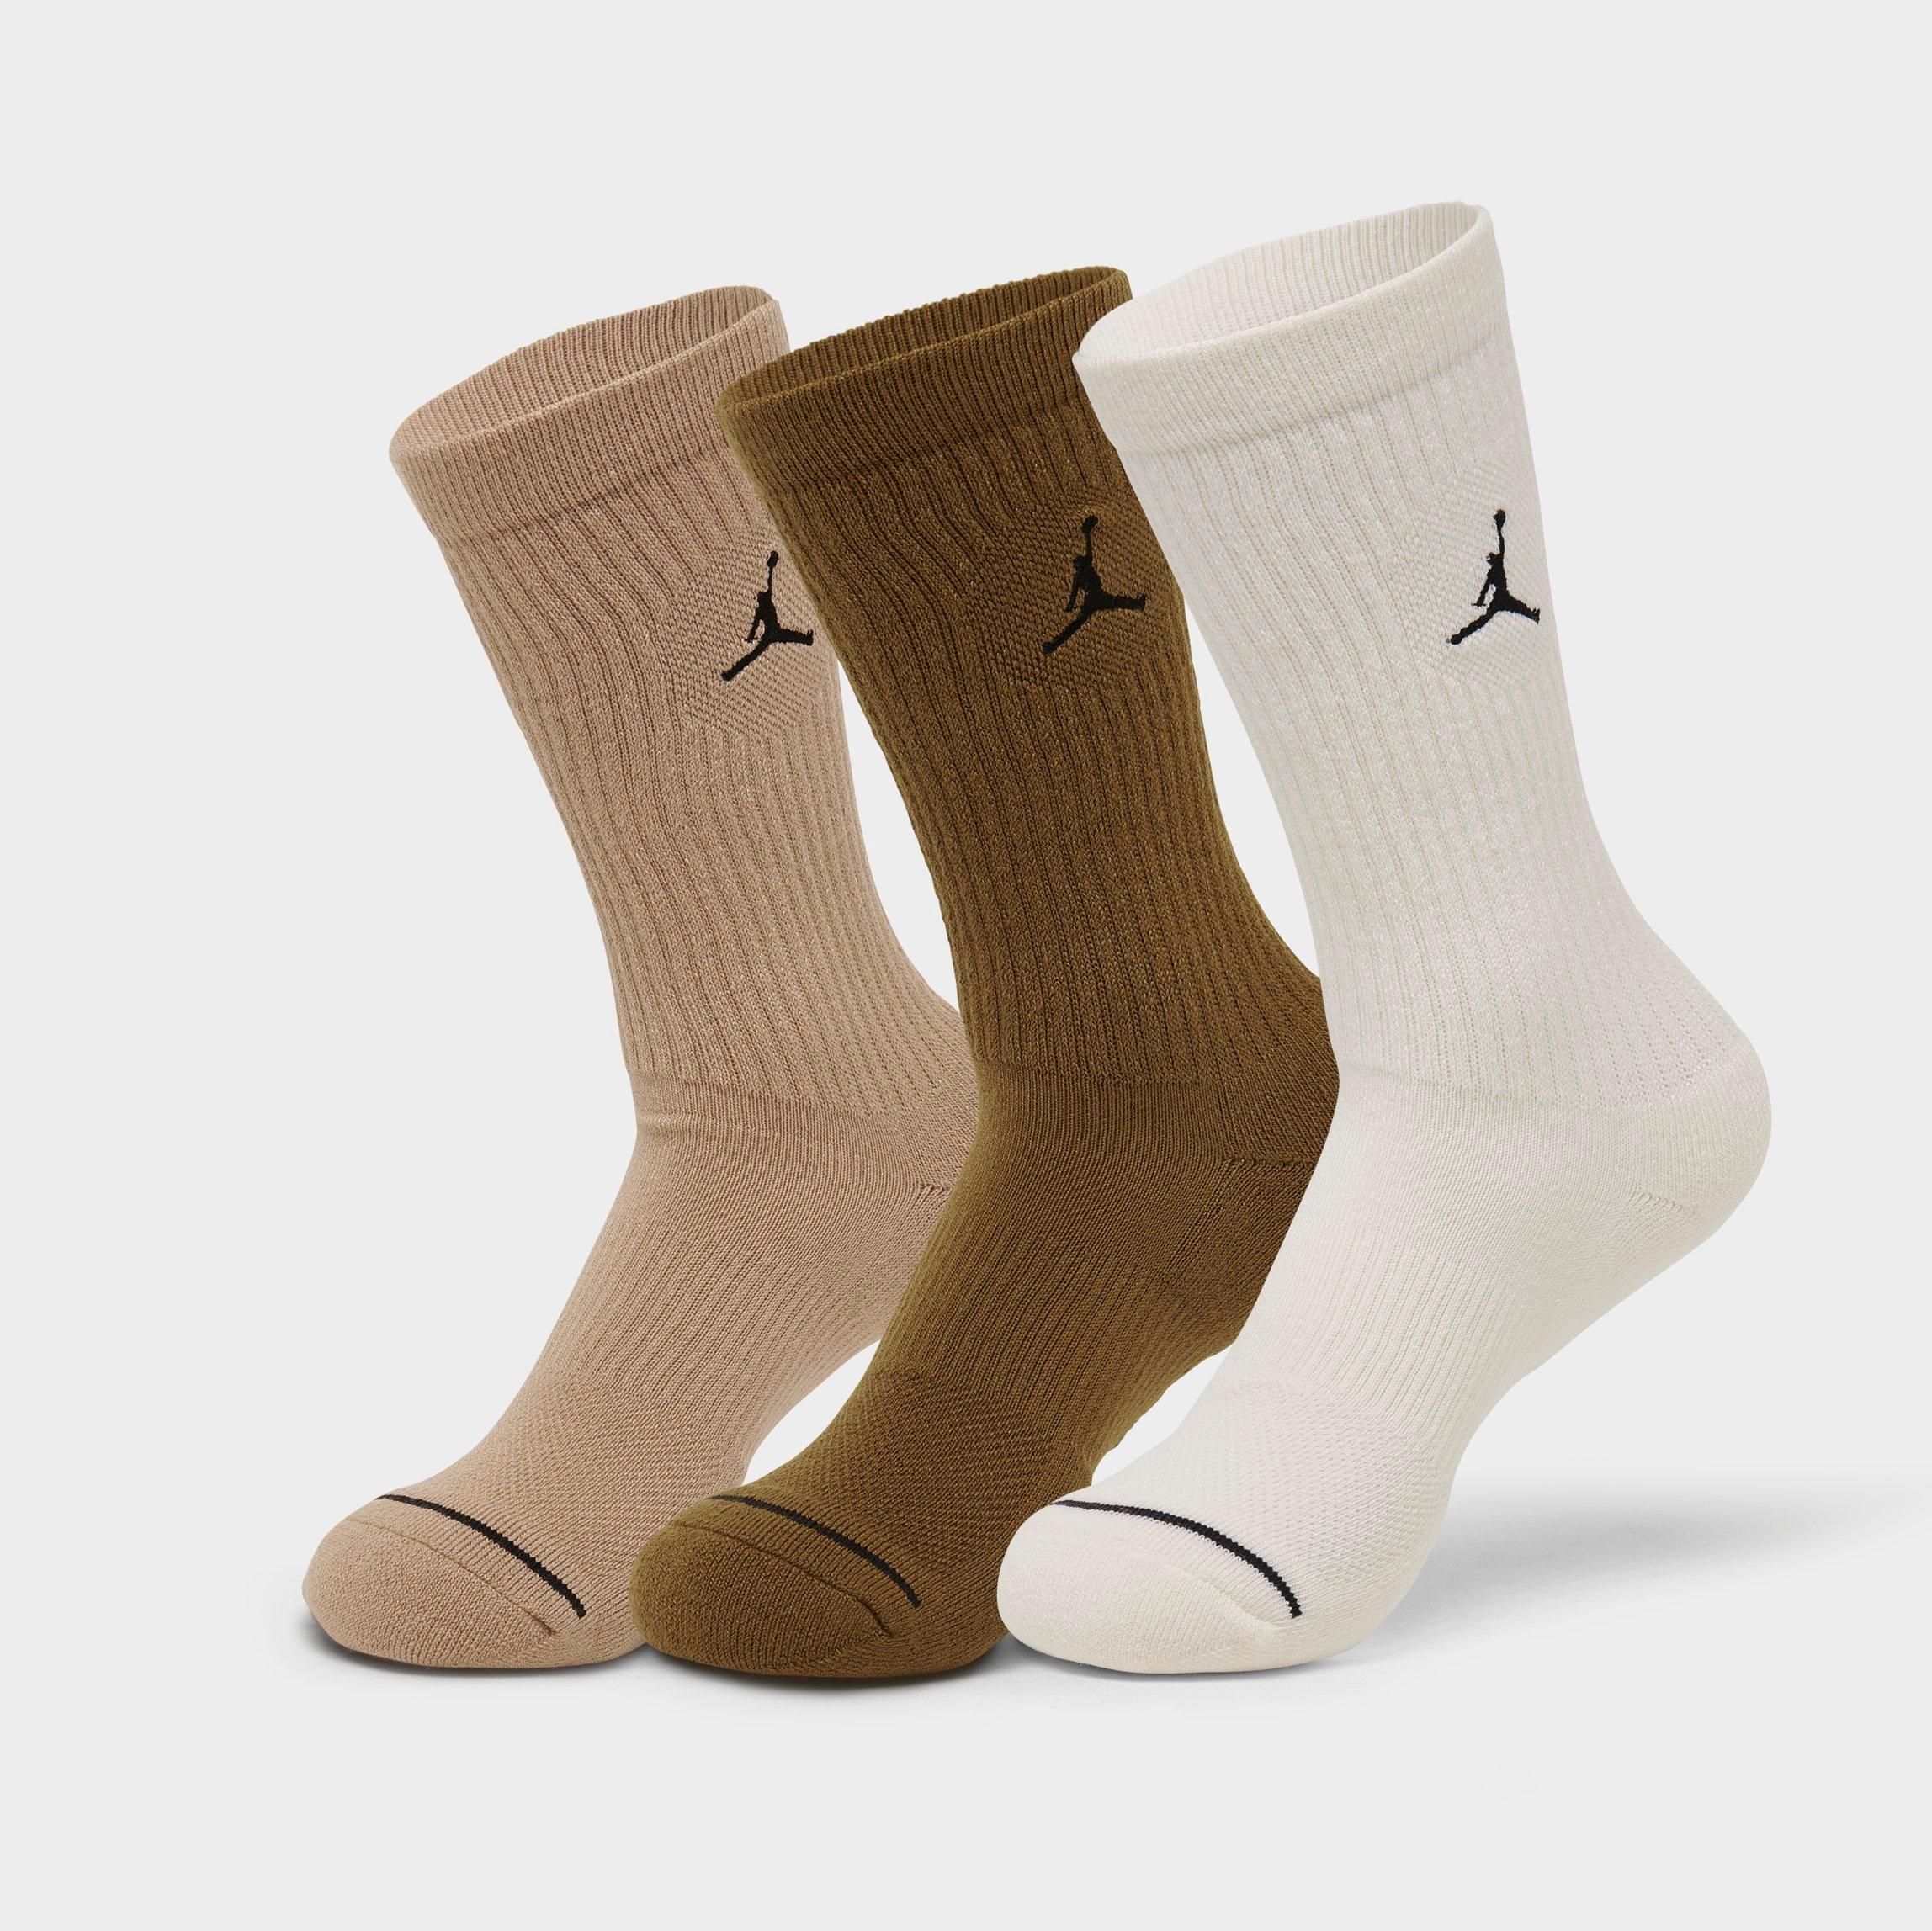 Nike Jordan Men's Everyday Crew Socks (3-pack) In Hemp/light British Tan/sail